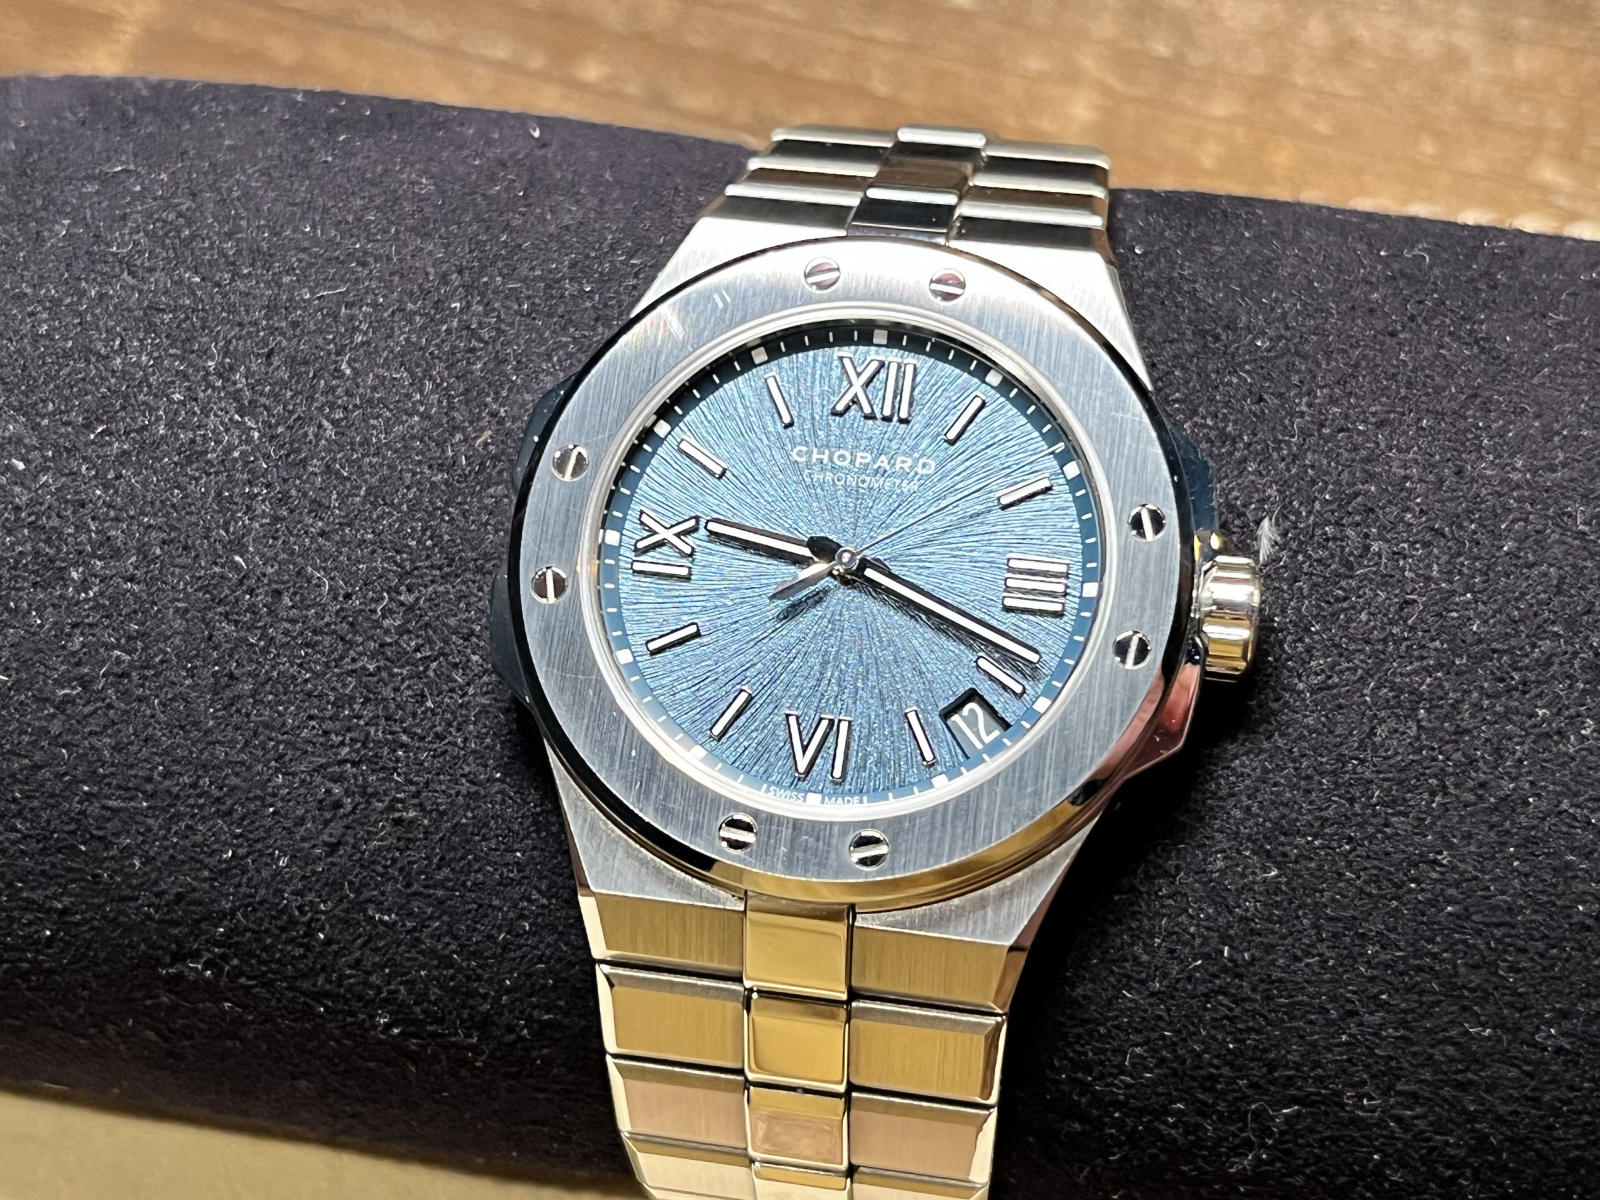 ショパール Chopard アルパイン イーグル ラージ 298600-3001 メンズ 腕時計 ブルー 文字盤 デイト 裏スケルトン 自動巻き Alpine VLP 90196186